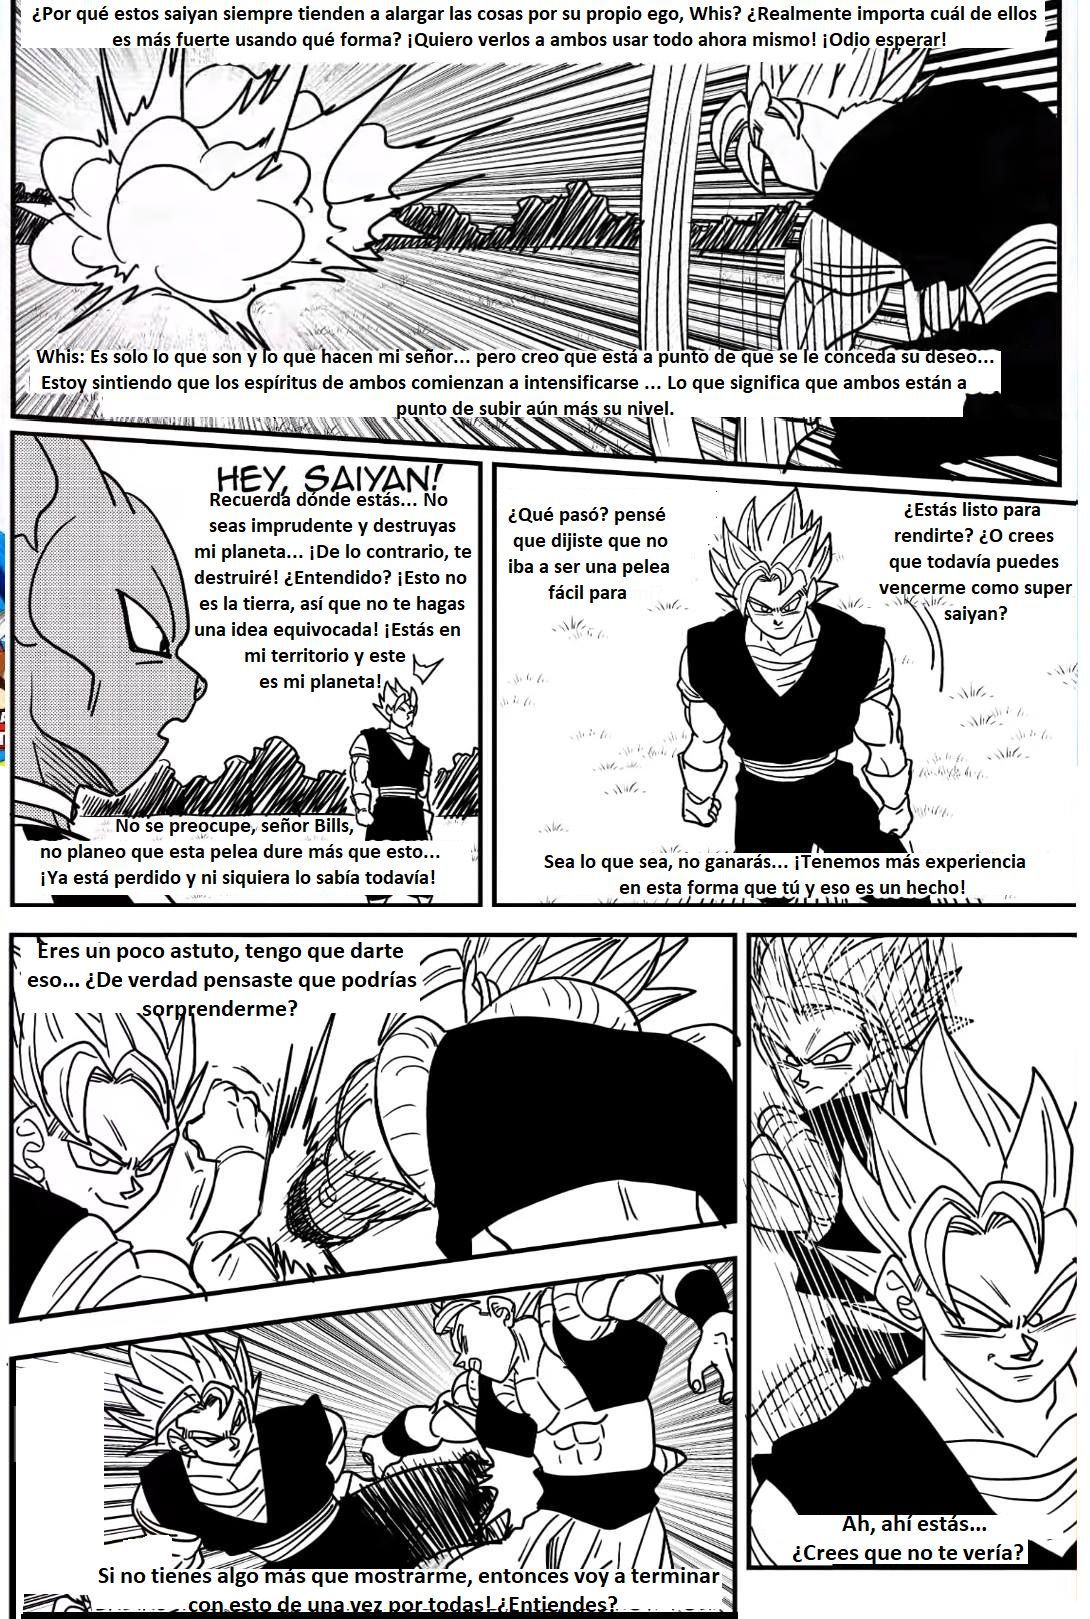 Beyond Dragon Ball Super: Gogeta And Vegito Meet! Vegito Mocks Gogeta! The Battle Of Fusions Begins! 14